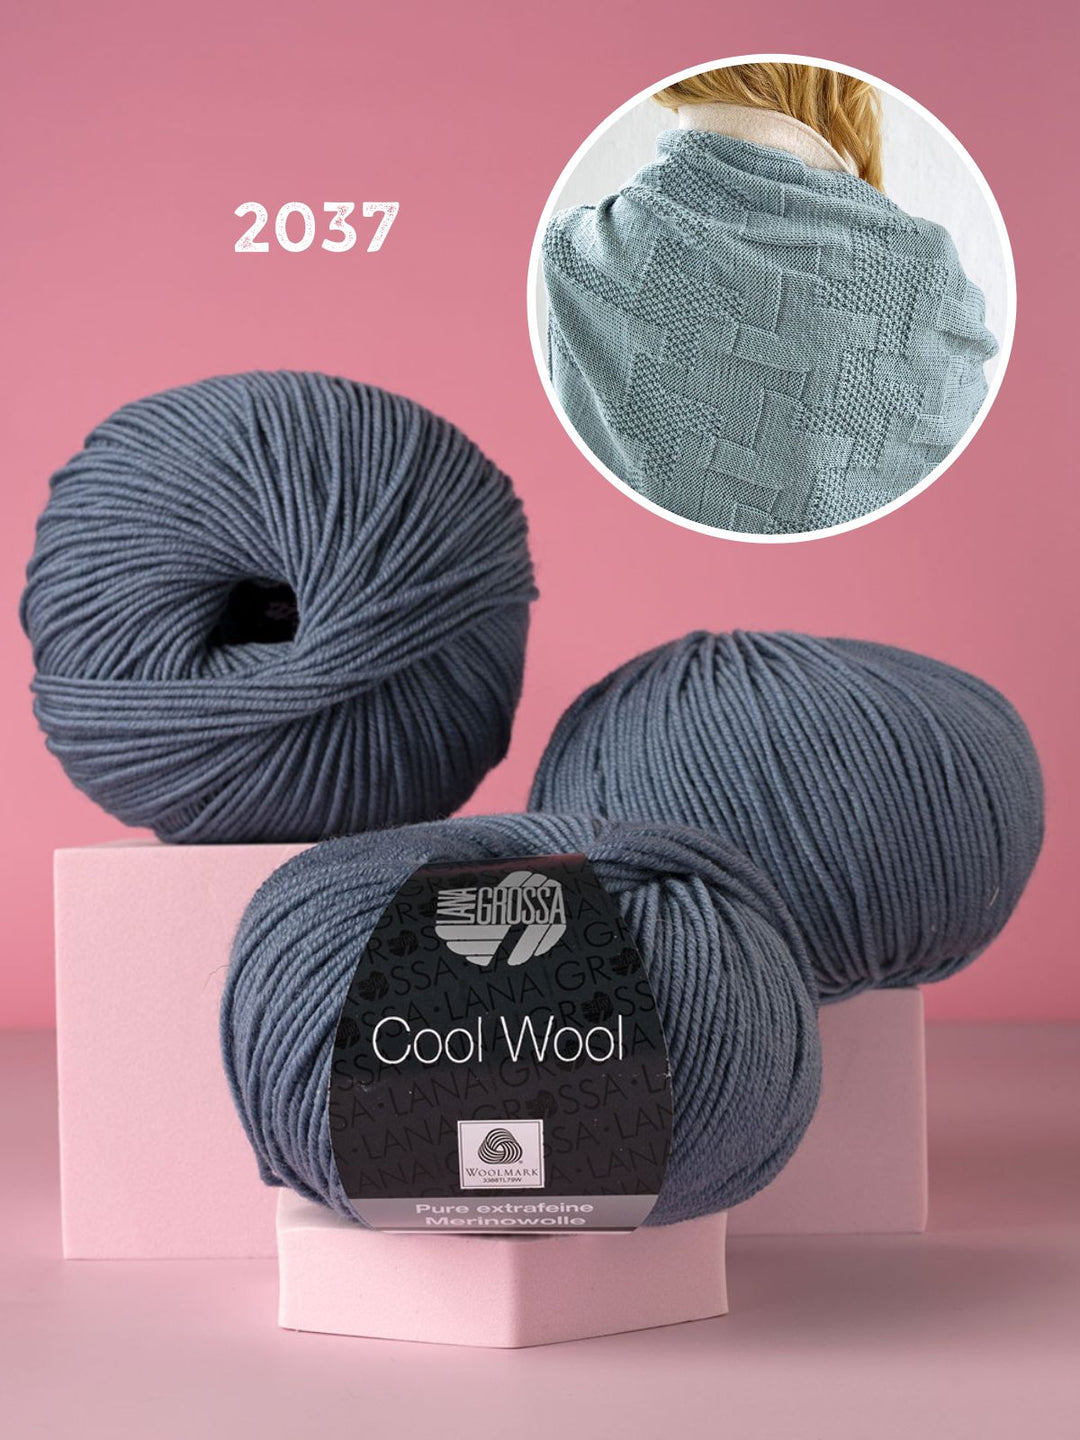 Strickpaket Cool Wool Stola im Strukturmuster